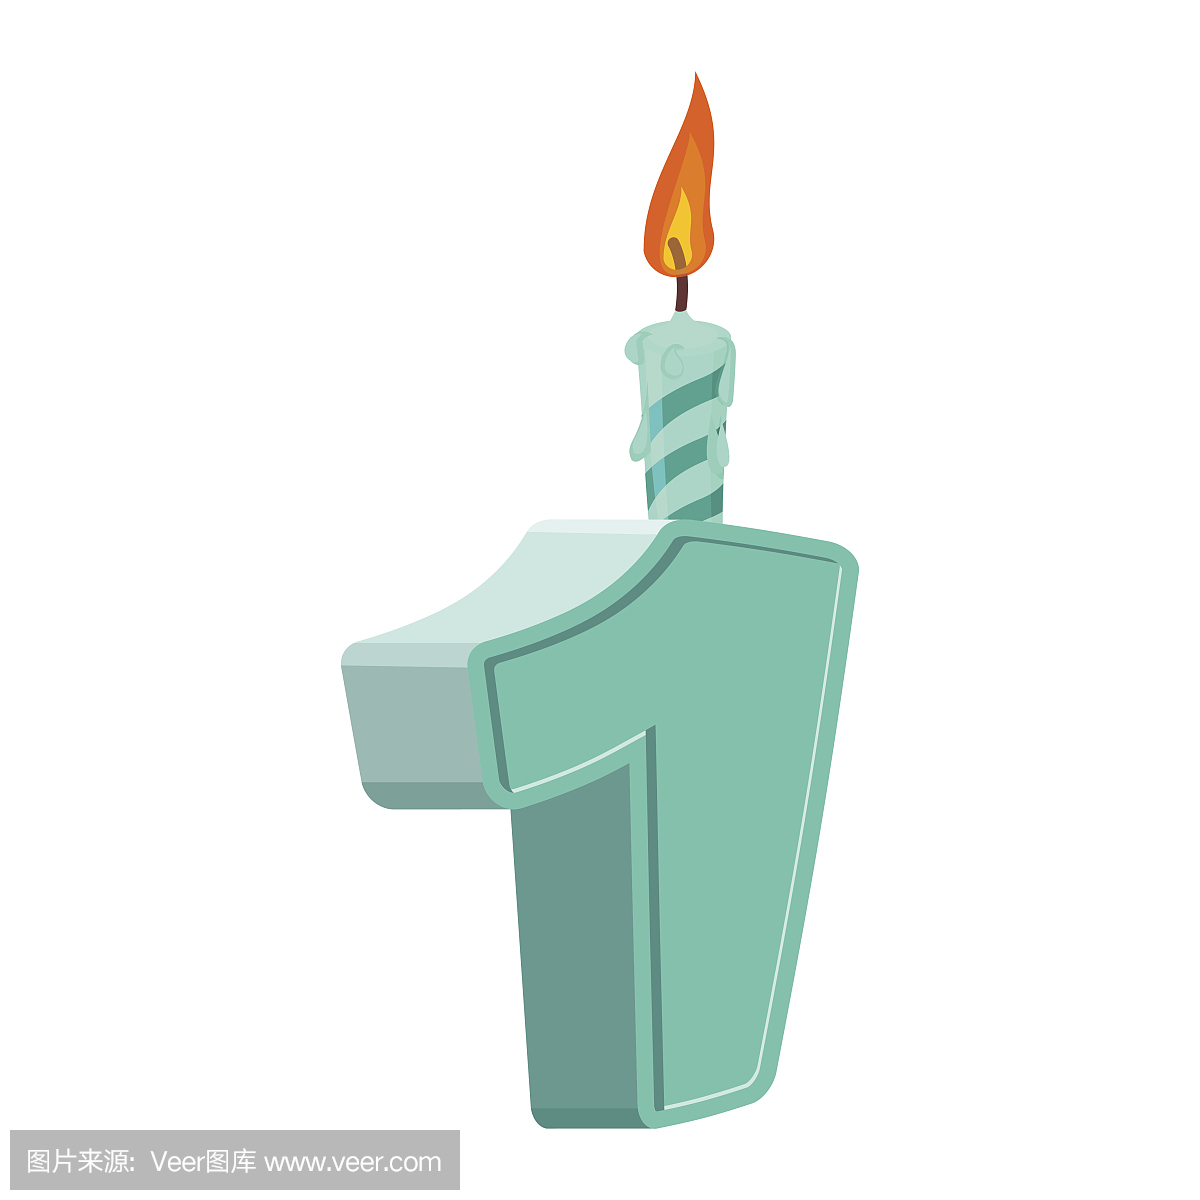 1岁生日带节日蜡烛的假期蛋糕数字。一周年